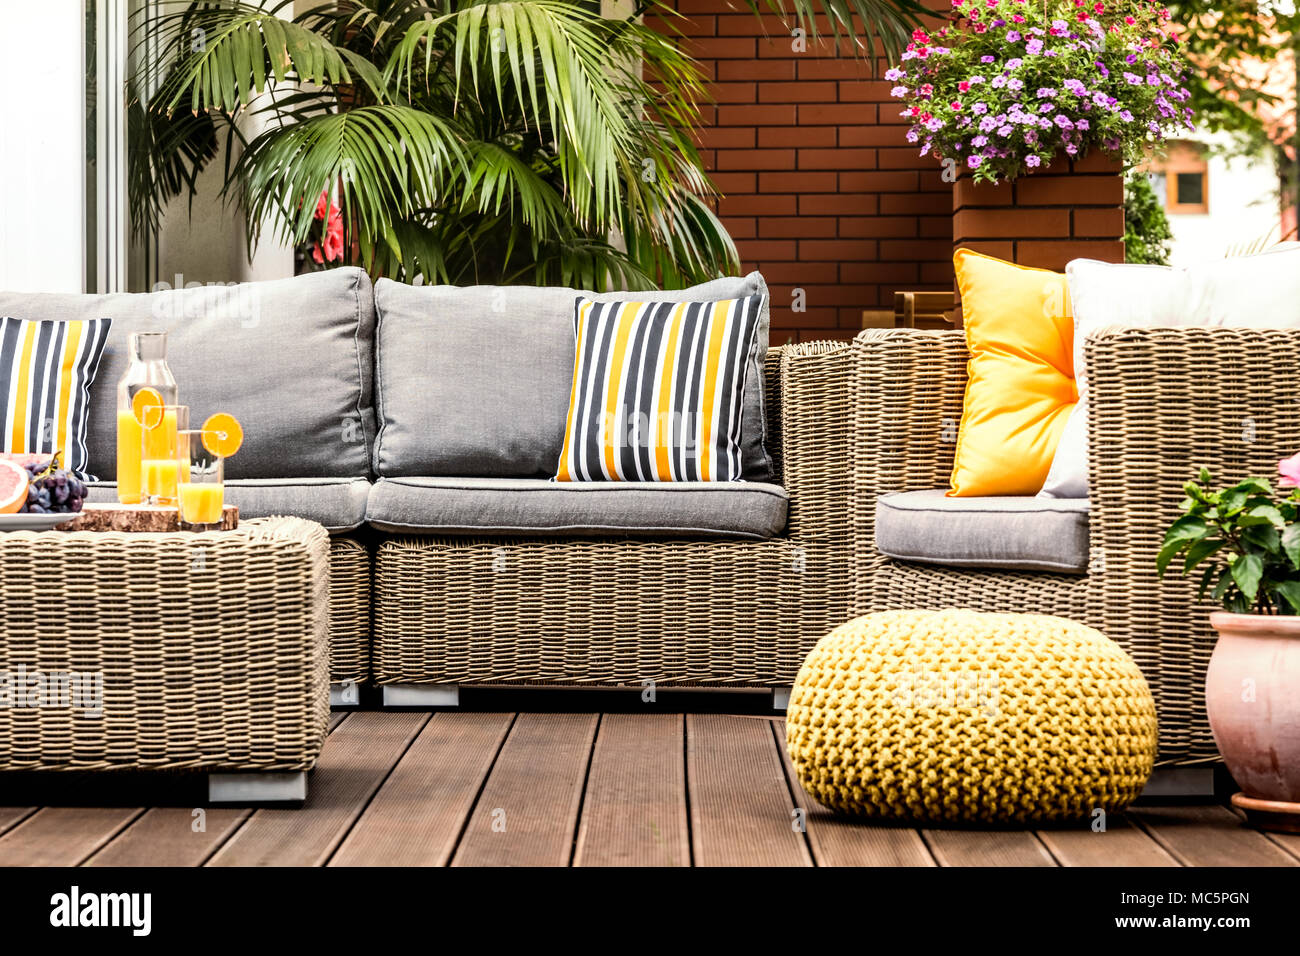 Gelbe pouf Neben einem rattan Sessel auf hölzernen Terrasse mit gestreiften  Kissen auf dem Sofa Stockfotografie - Alamy